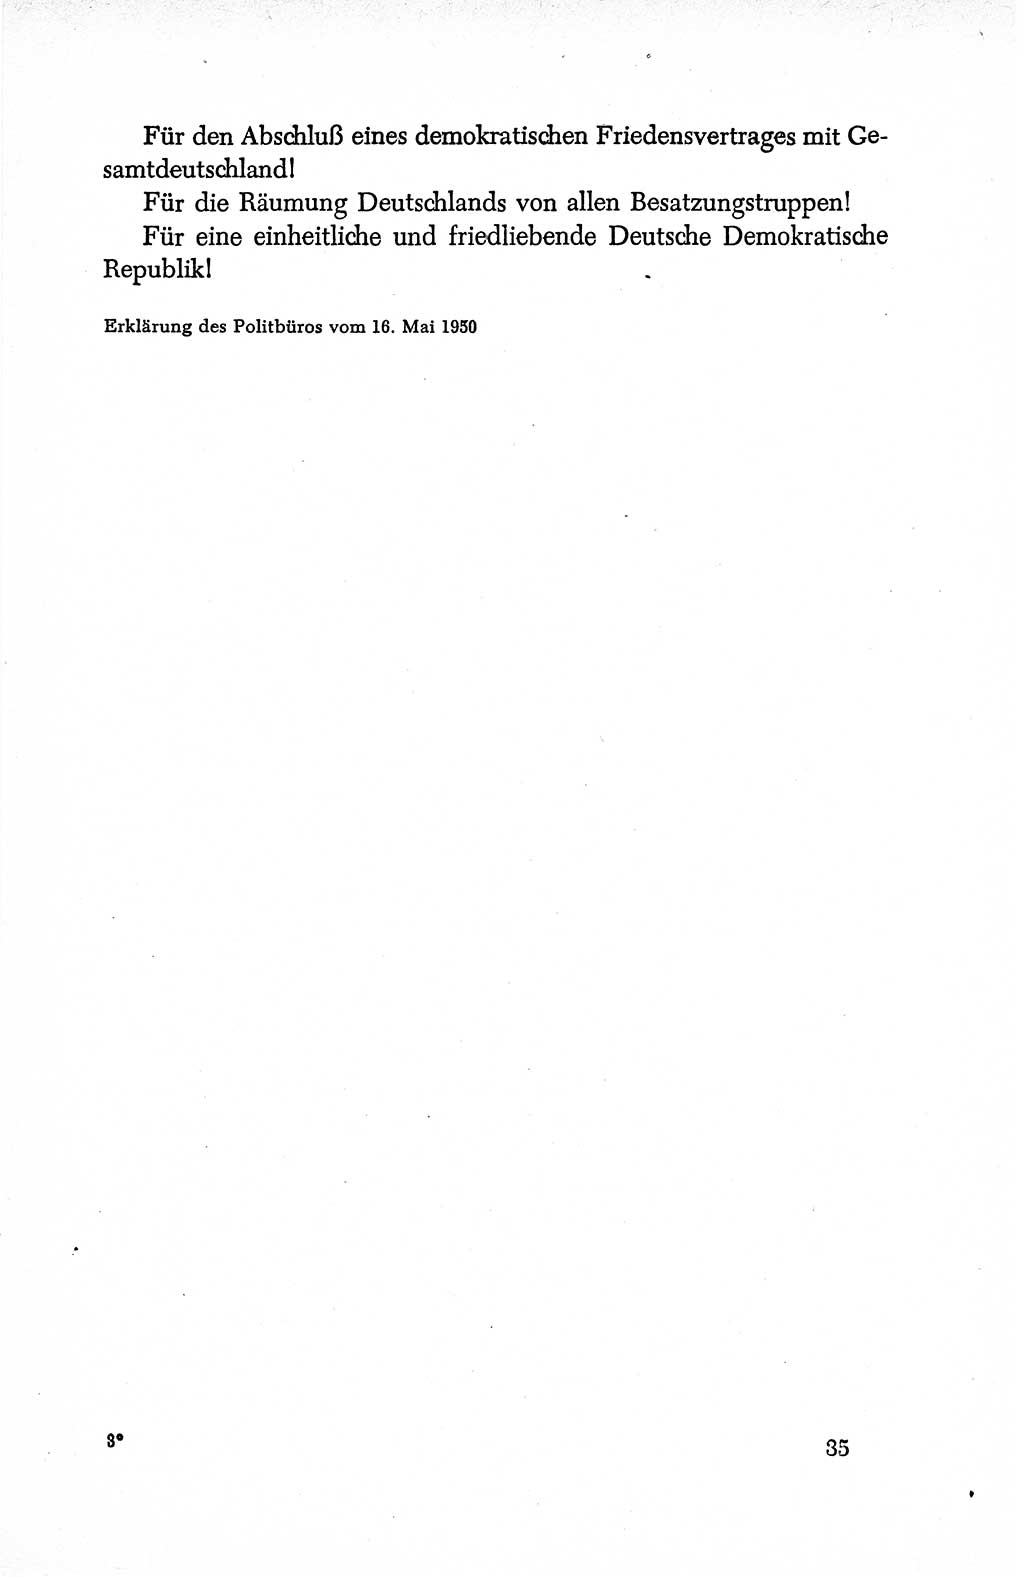 Dokumente der Sozialistischen Einheitspartei Deutschlands (SED) [Deutsche Demokratische Republik (DDR)] 1950-1952, Seite 35 (Dok. SED DDR 1950-1952, S. 35)